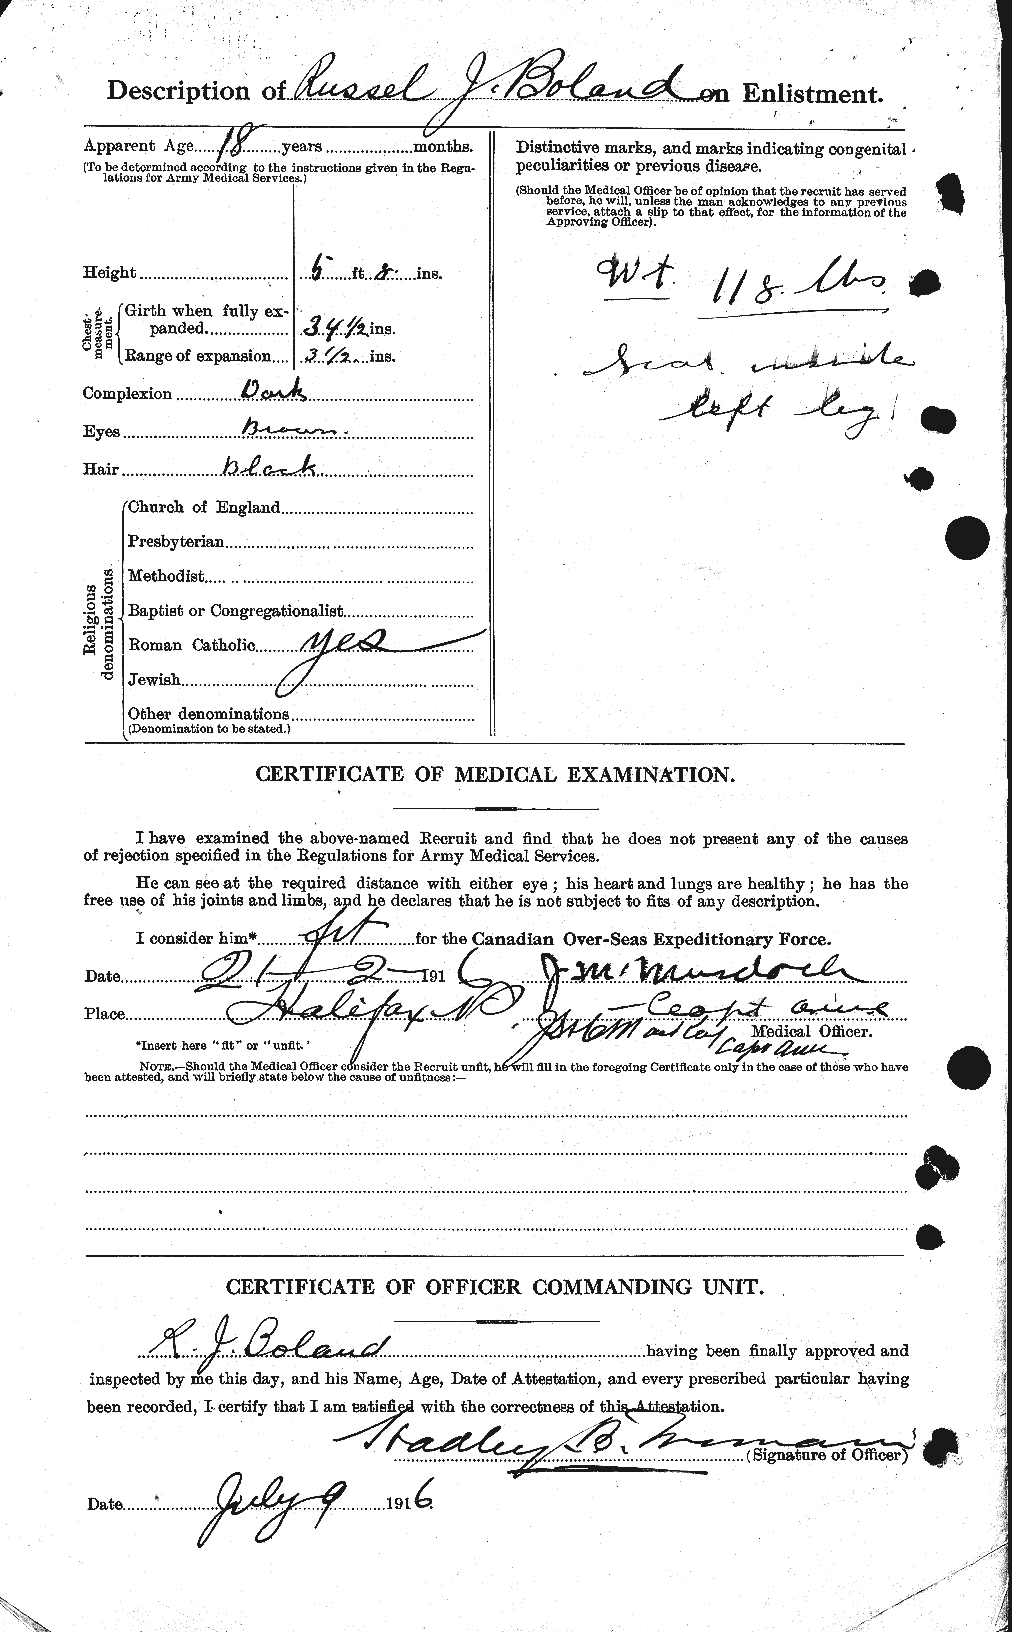 Dossiers du Personnel de la Première Guerre mondiale - CEC 249543b